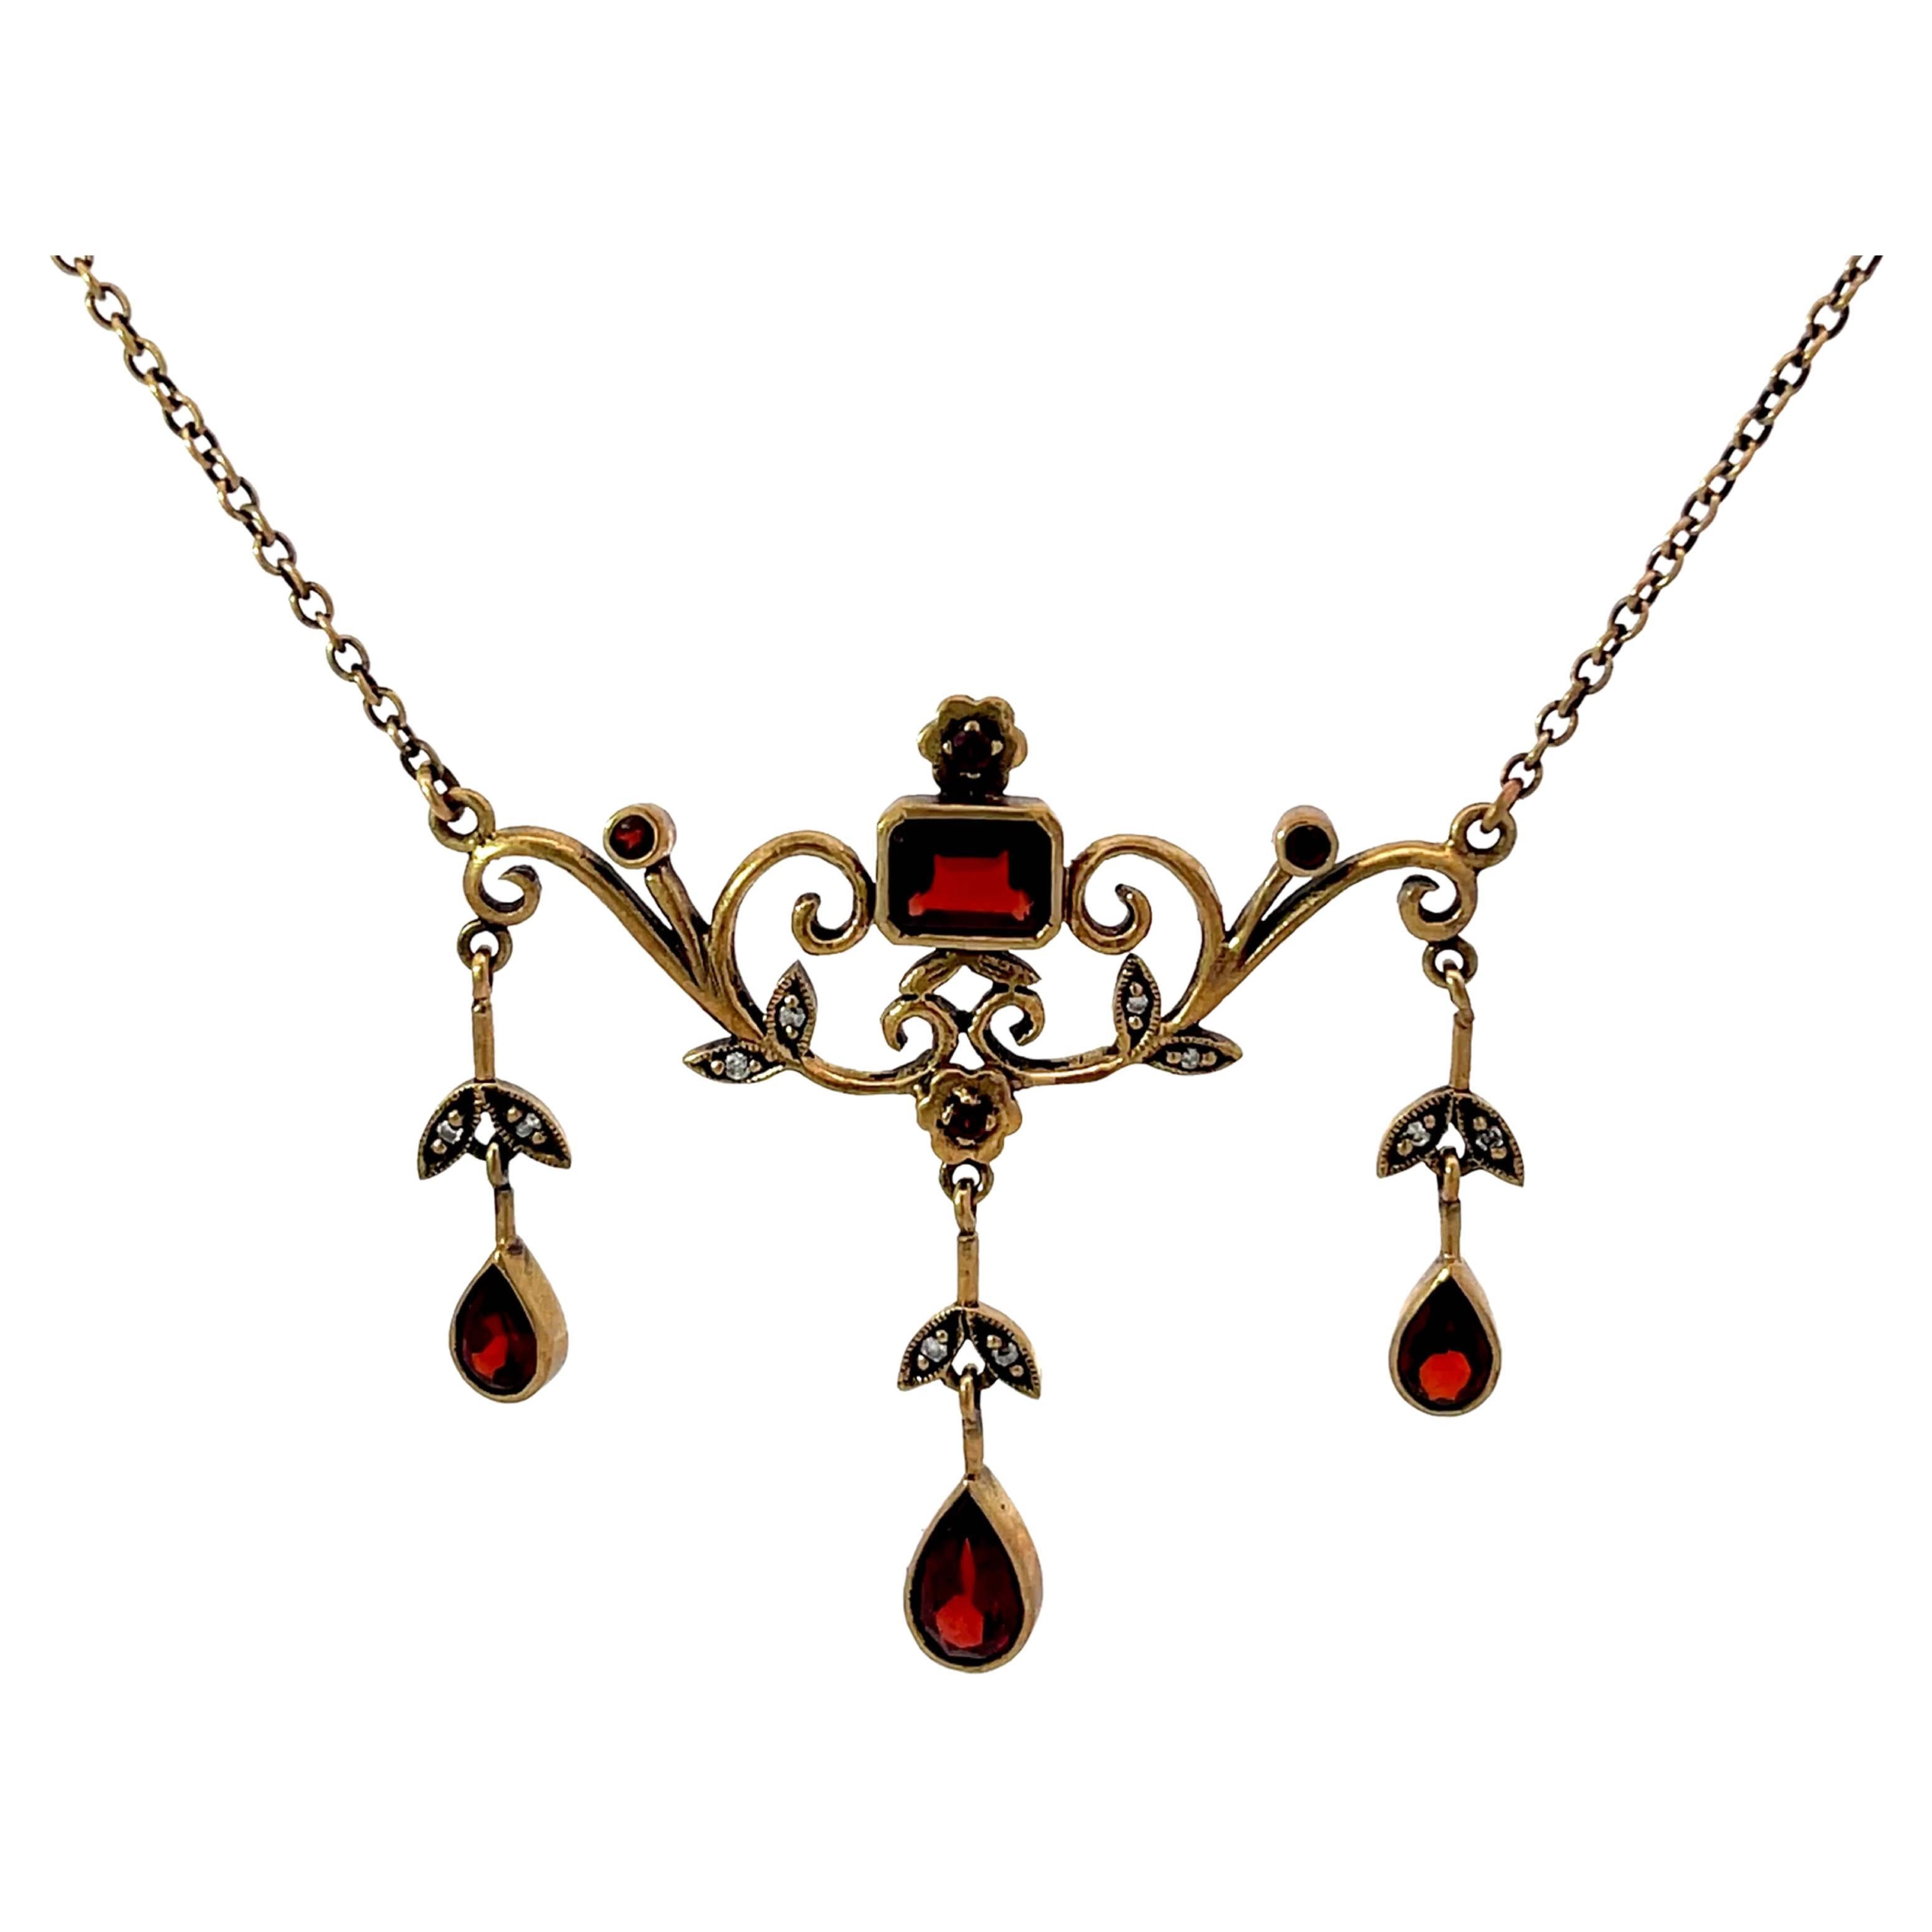 Dangly Halskette aus 9k Roségold mit Diamanten und rotem Granat im Renaissance-Stil